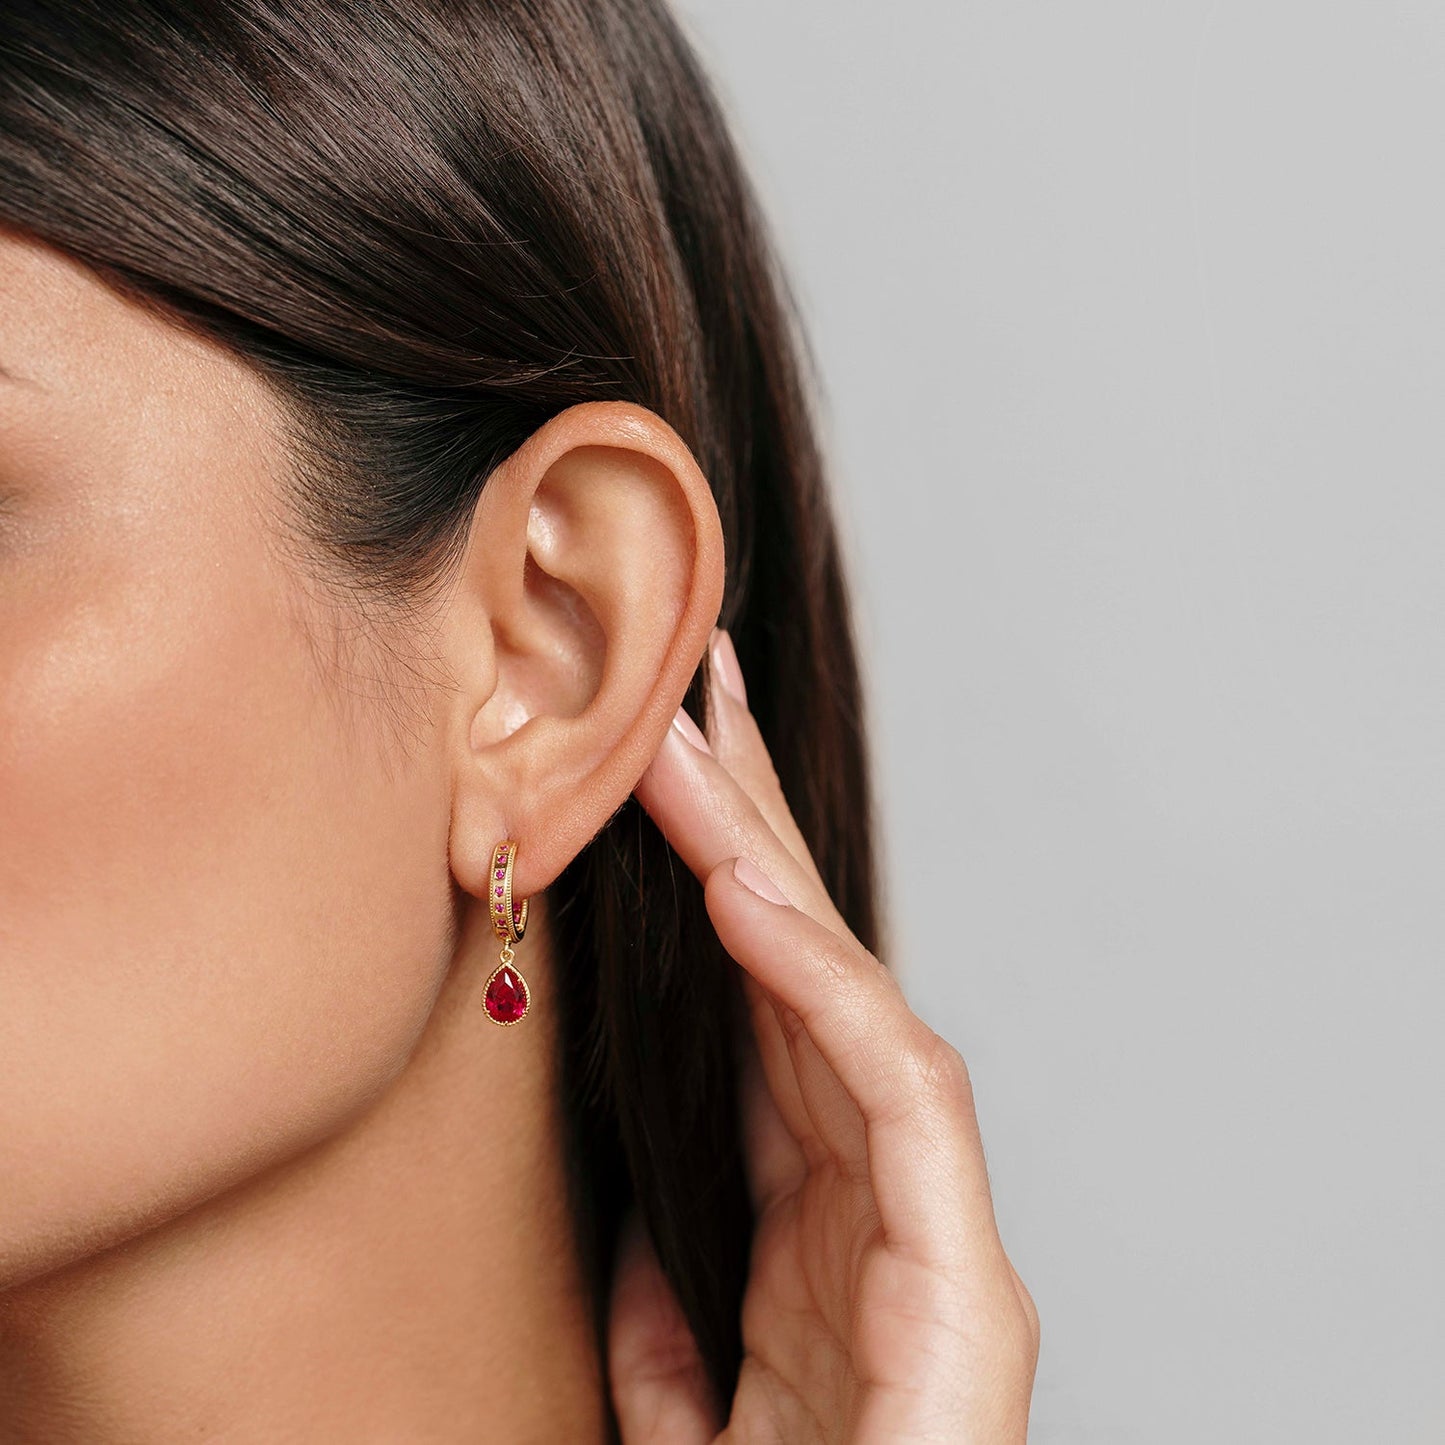 The Sofia Earrings